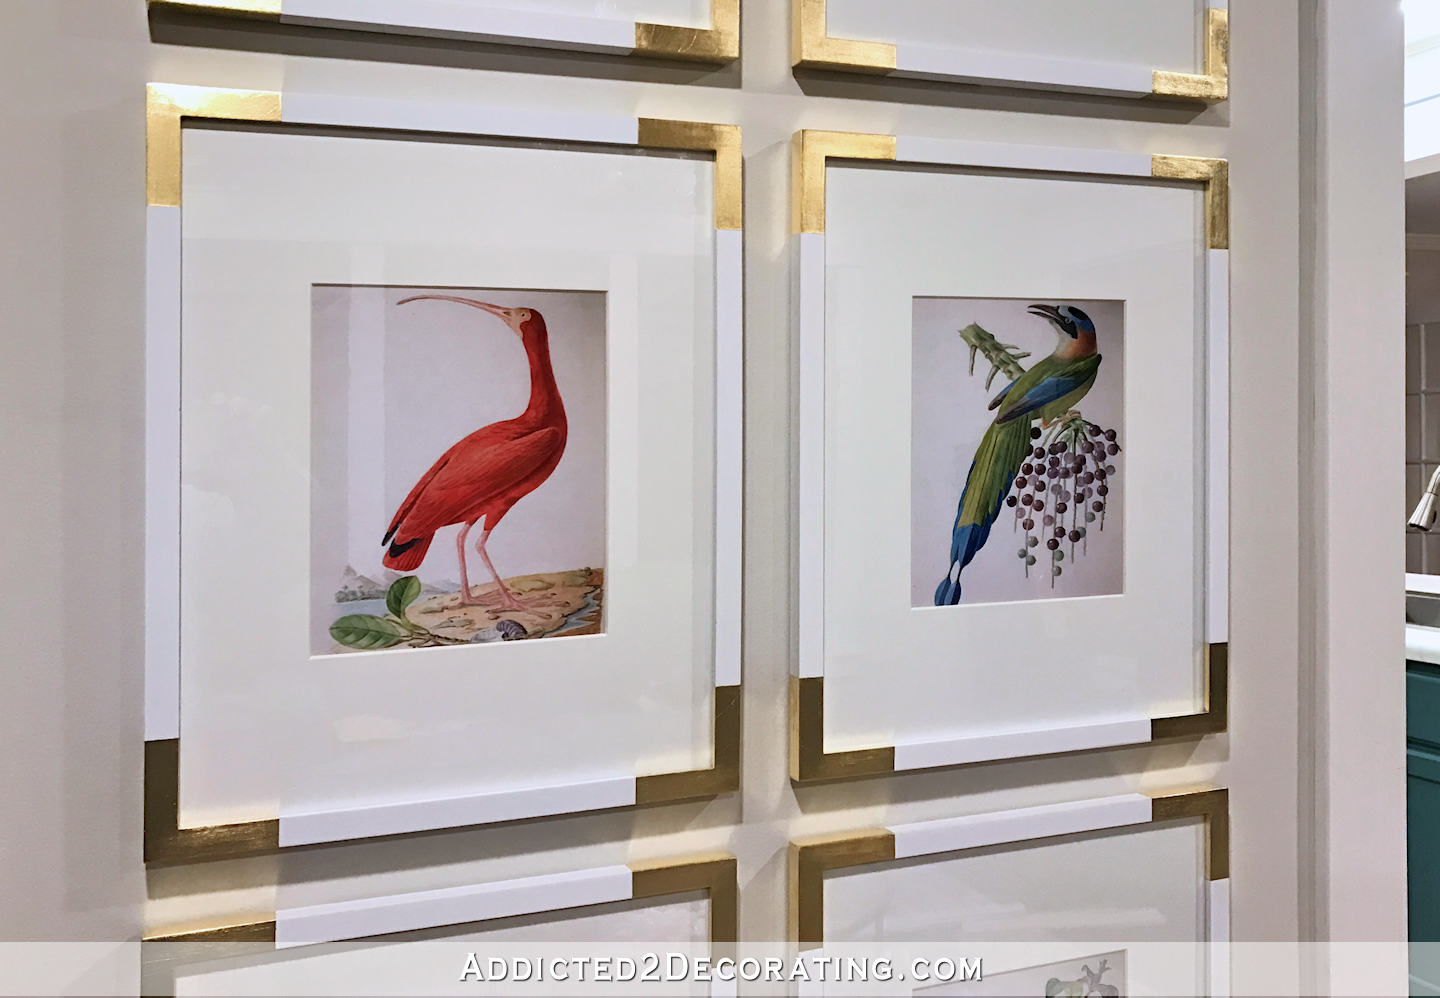 New Living Room Artwork — Gallery Wall Of Bird Illustrations